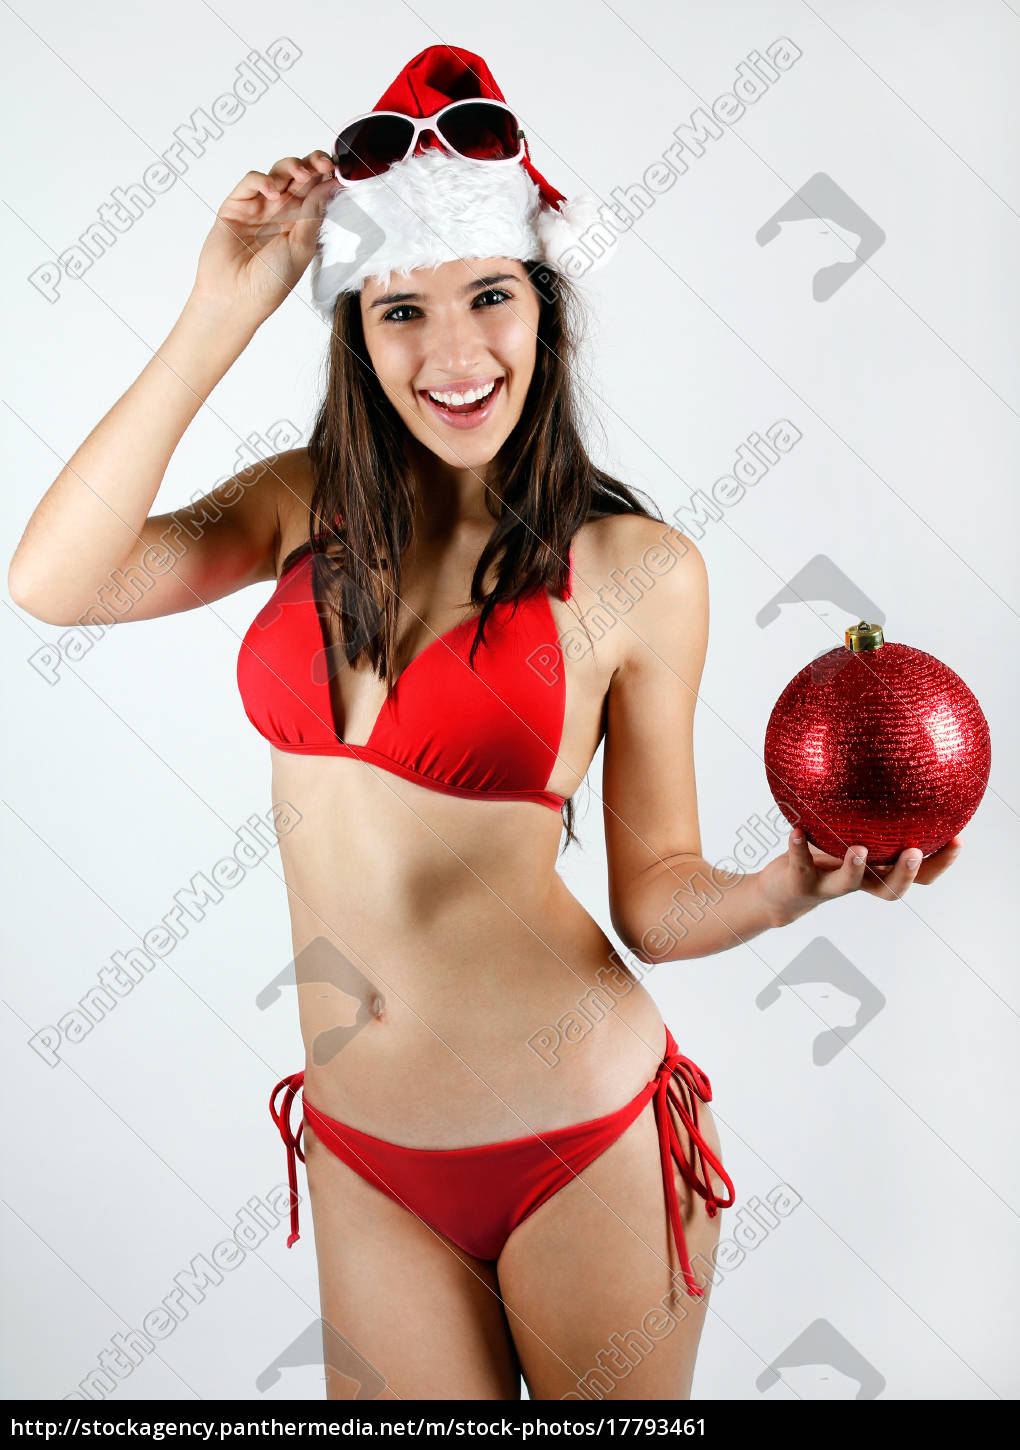 christmas bikini girl pics nude photo